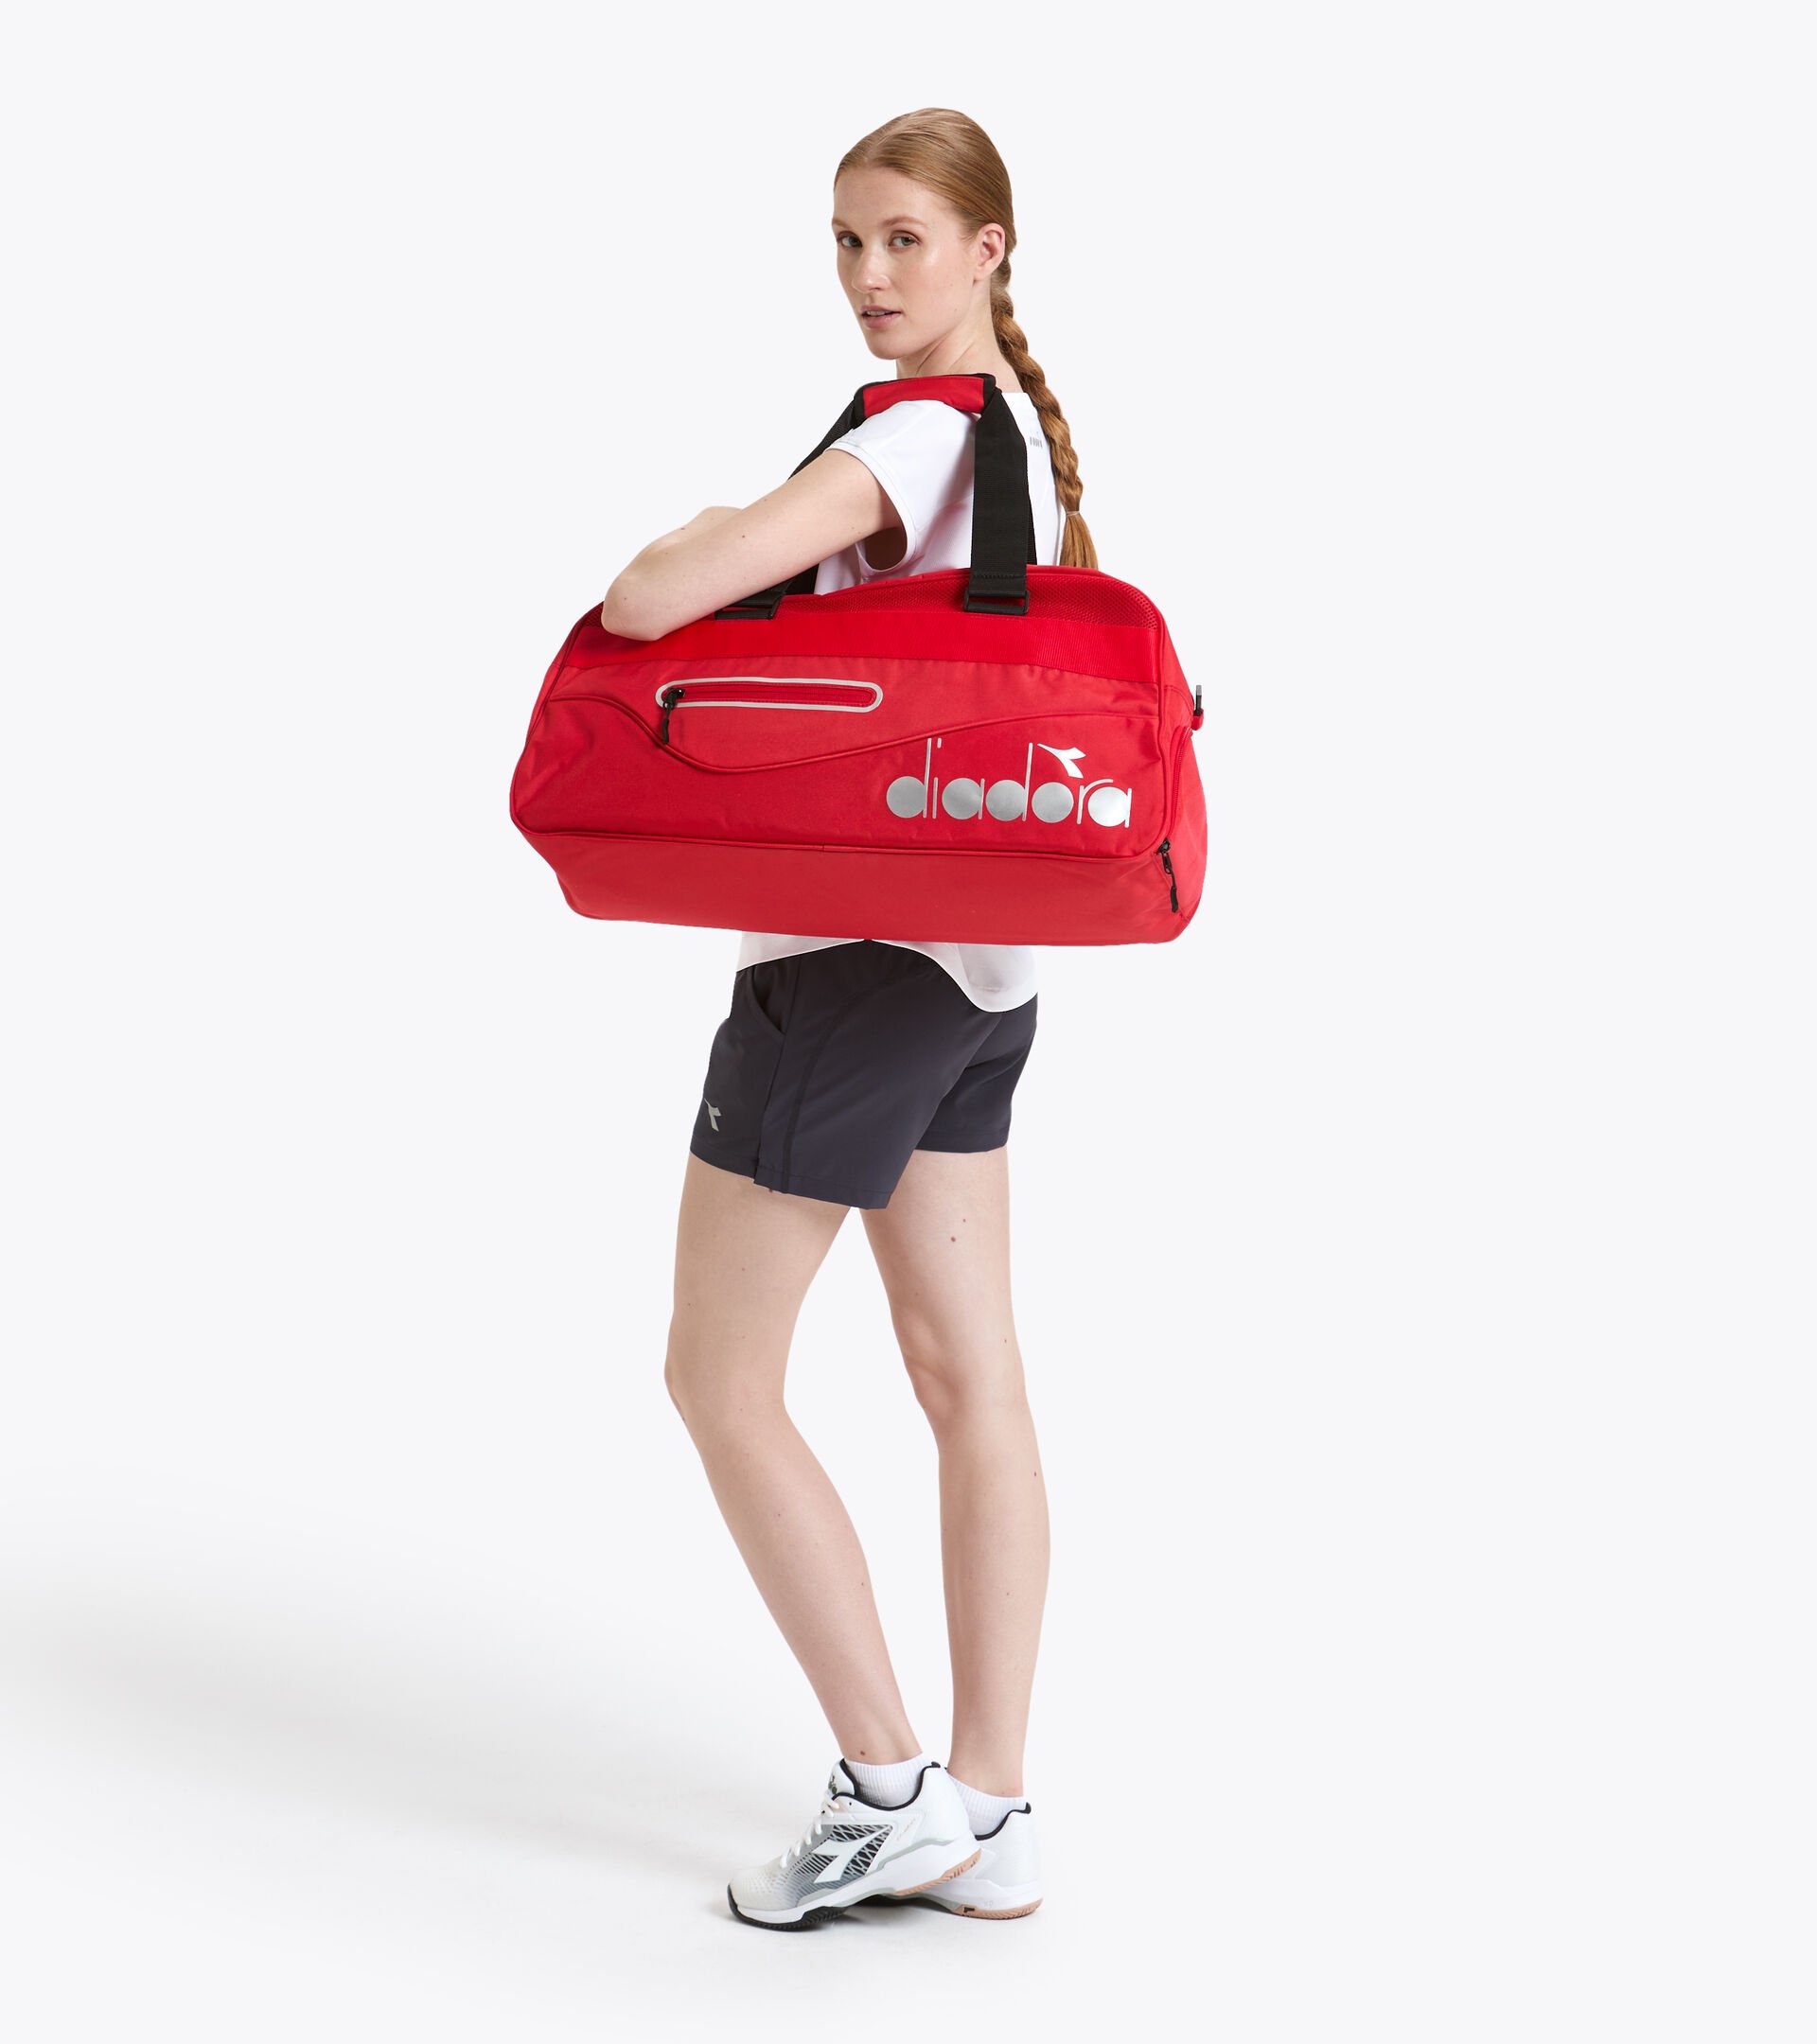 Training bag BAG TENNIS TOMATO RED - Diadora